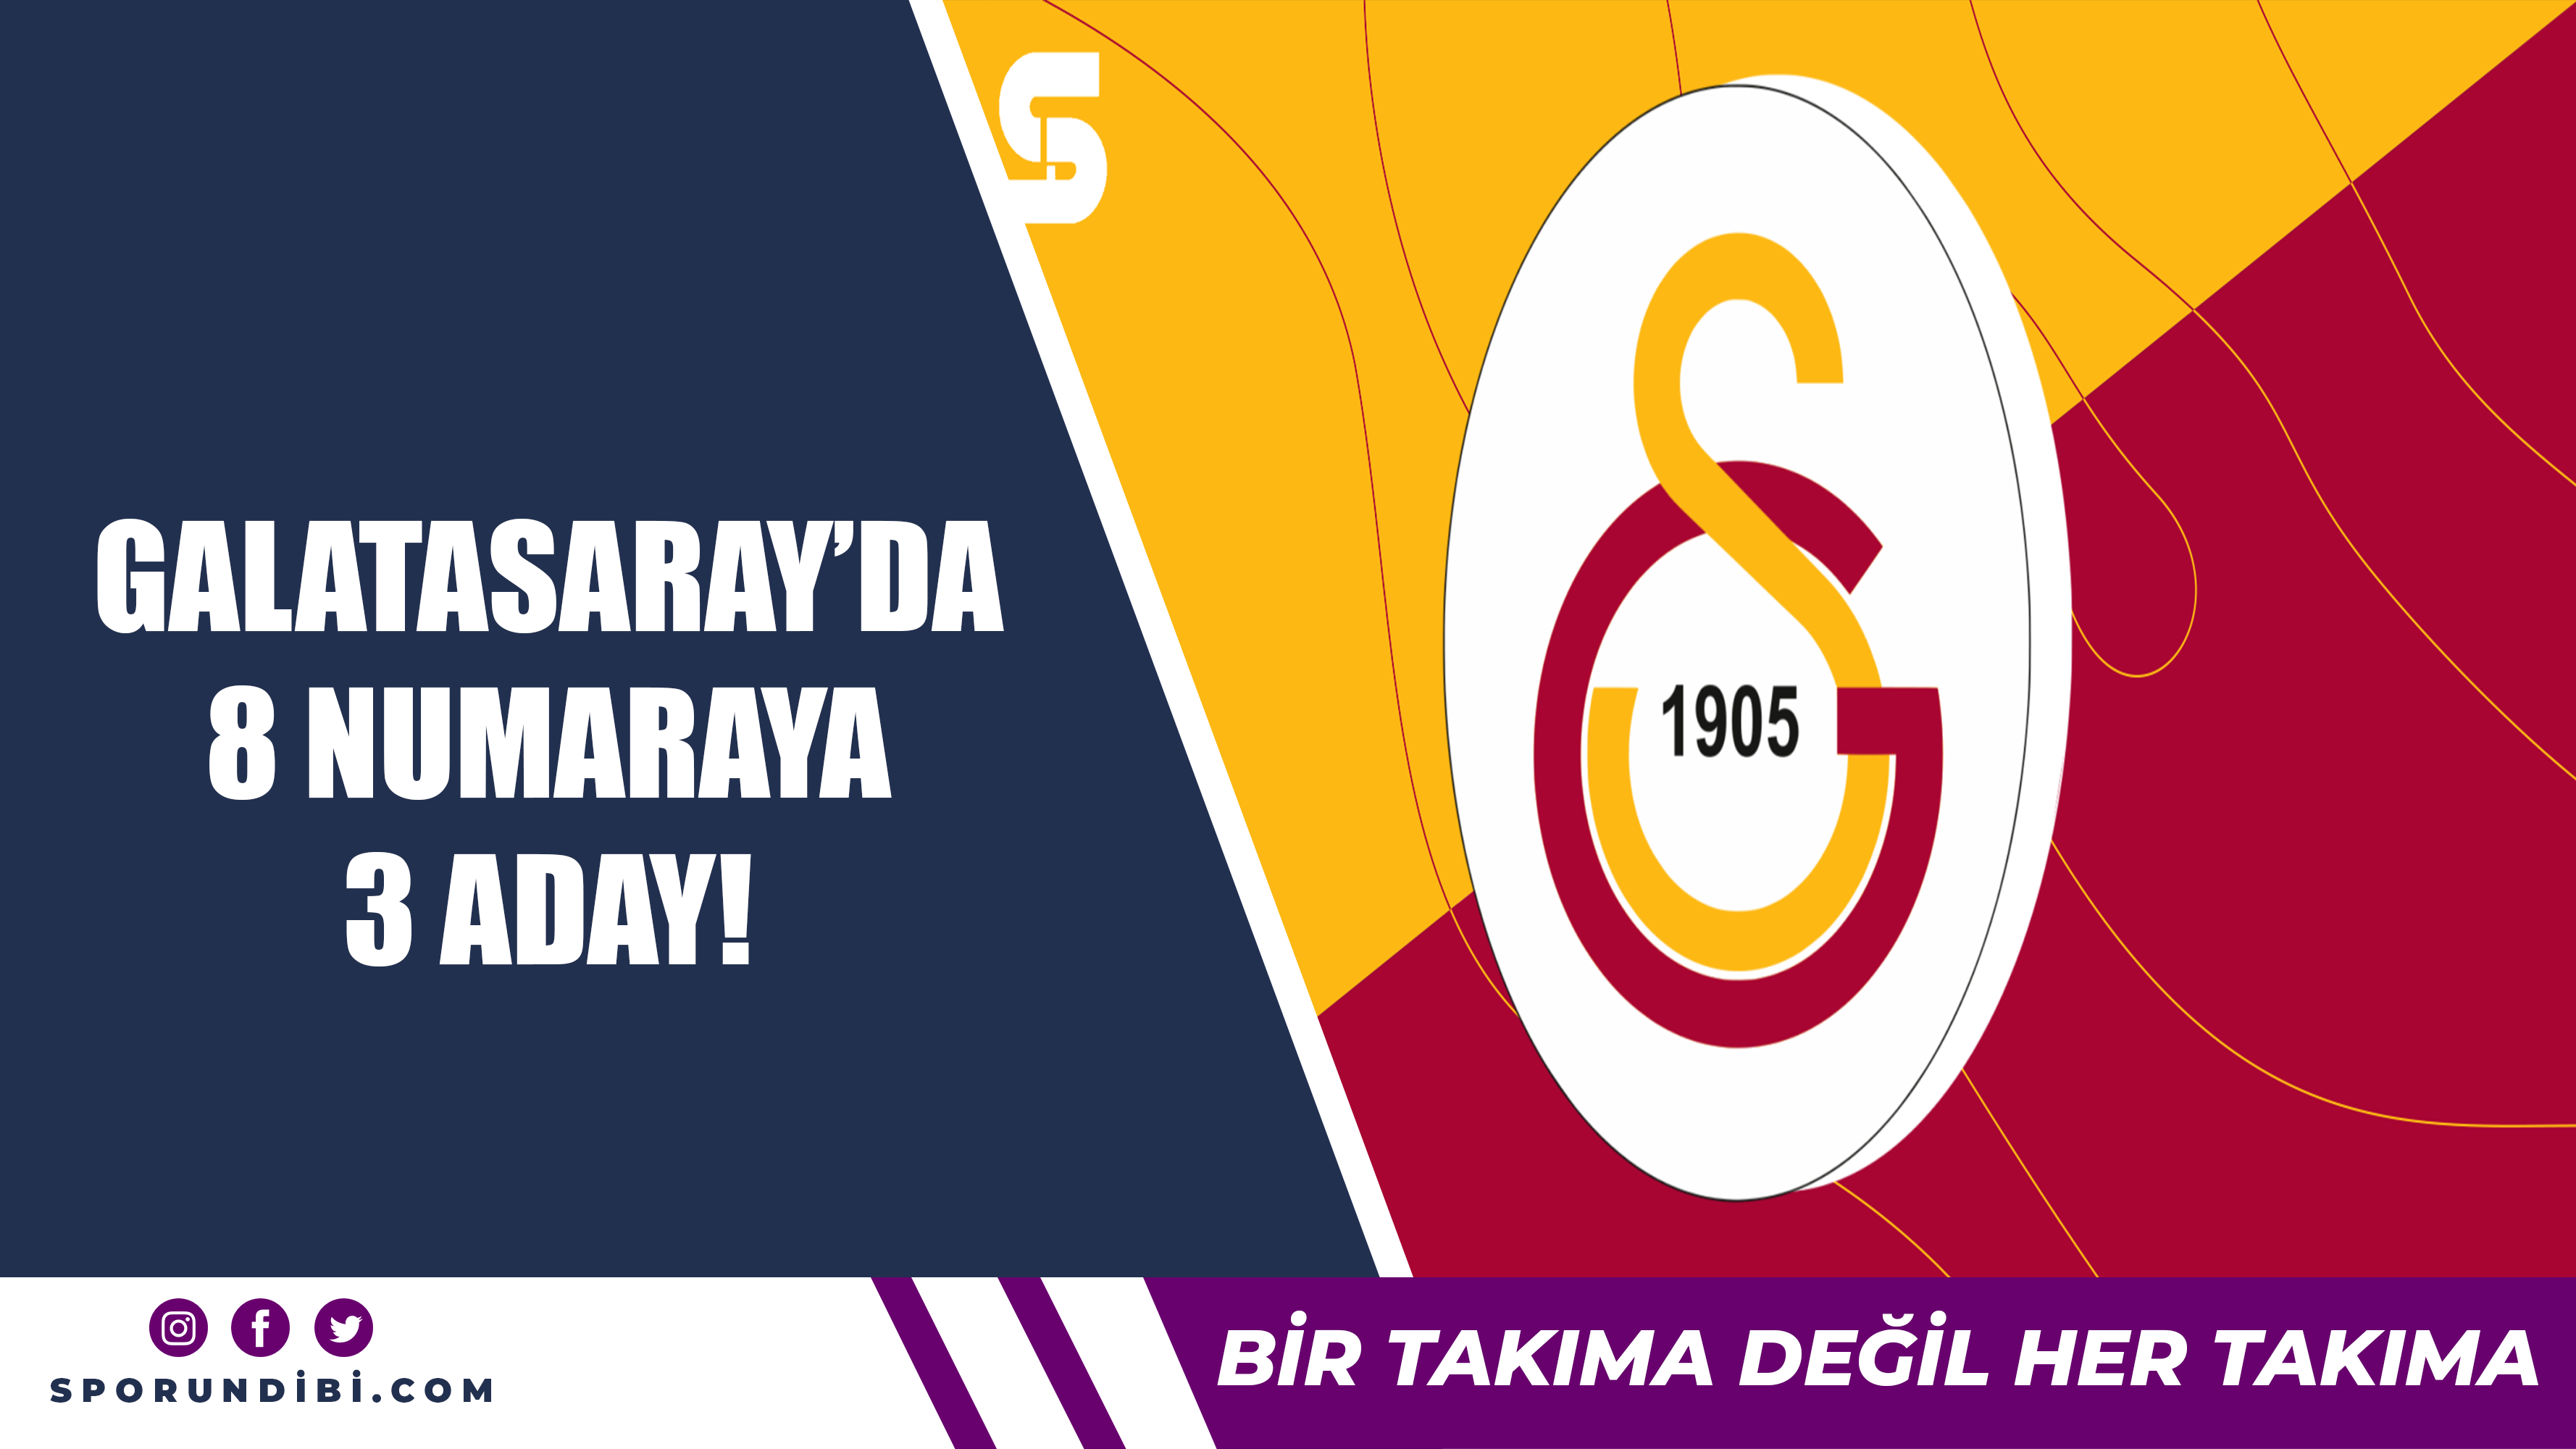 Galatasaray'da 8 numaraya 3 aday!